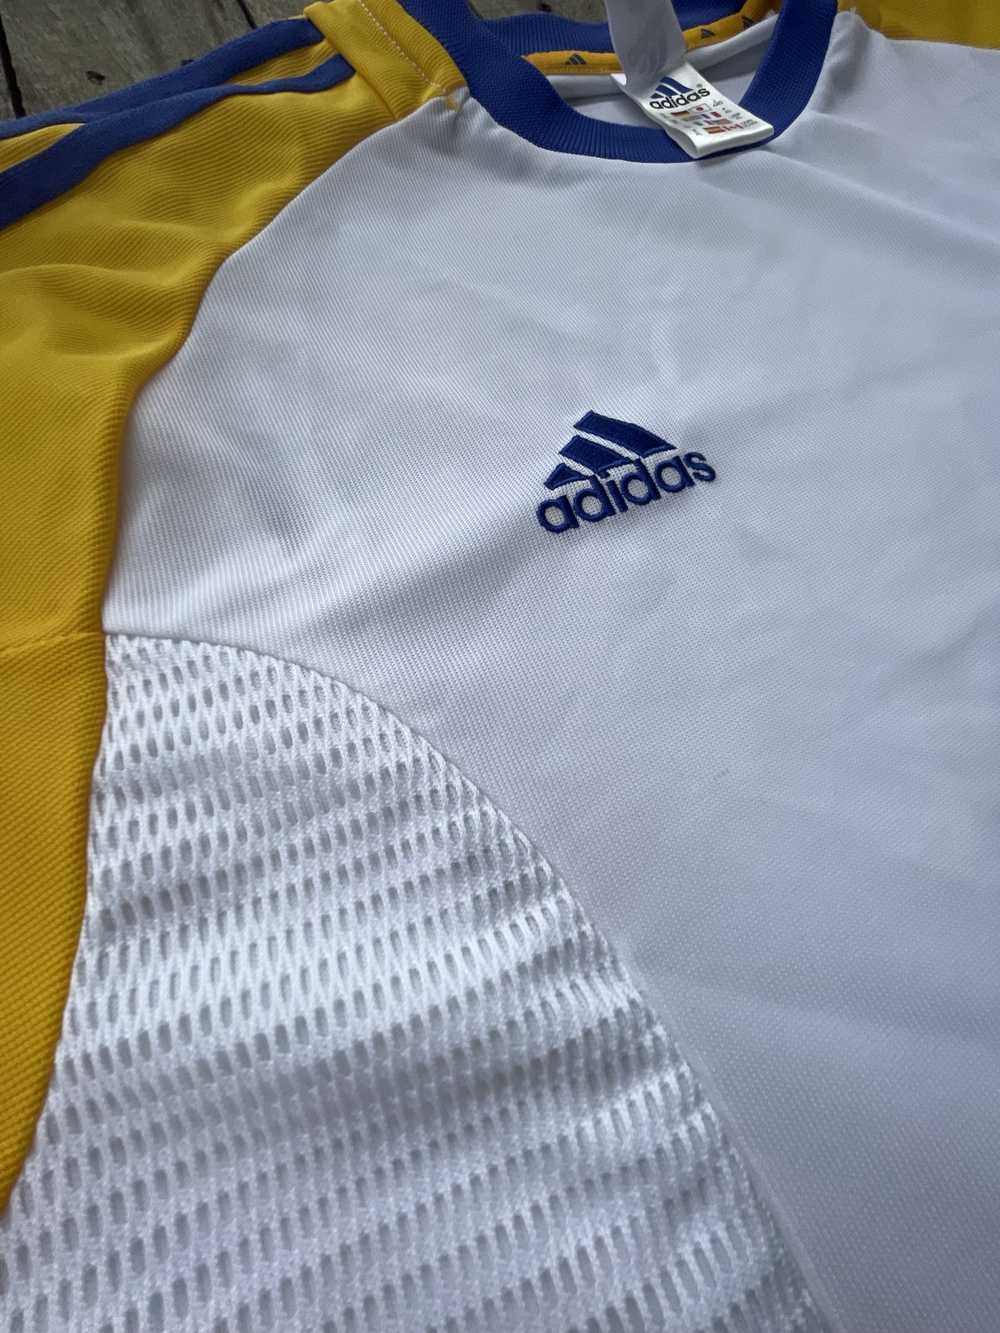 Adidas Vintage Sweden Soccer Jersey - image 2